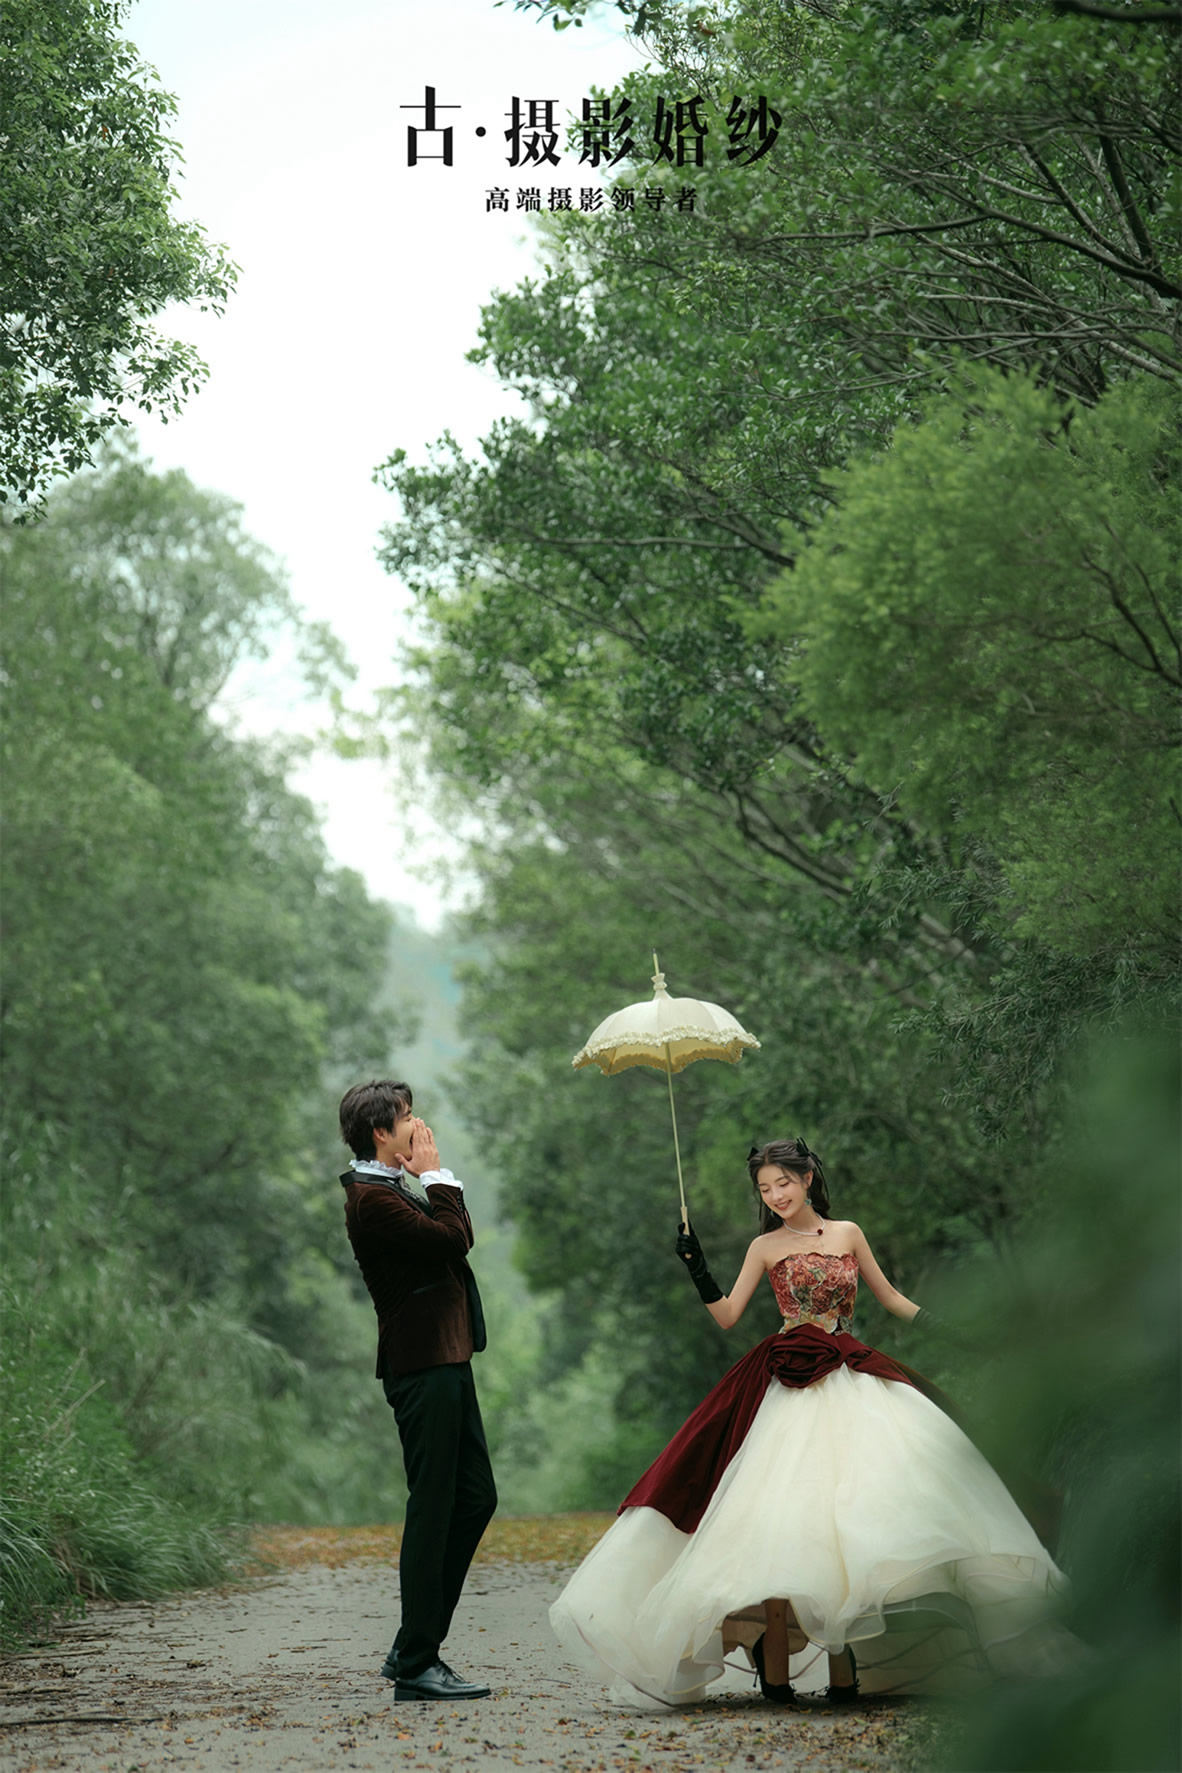 国王庄园-Claire - 拍摄地 - 广州婚纱摄影-广州古摄影官网